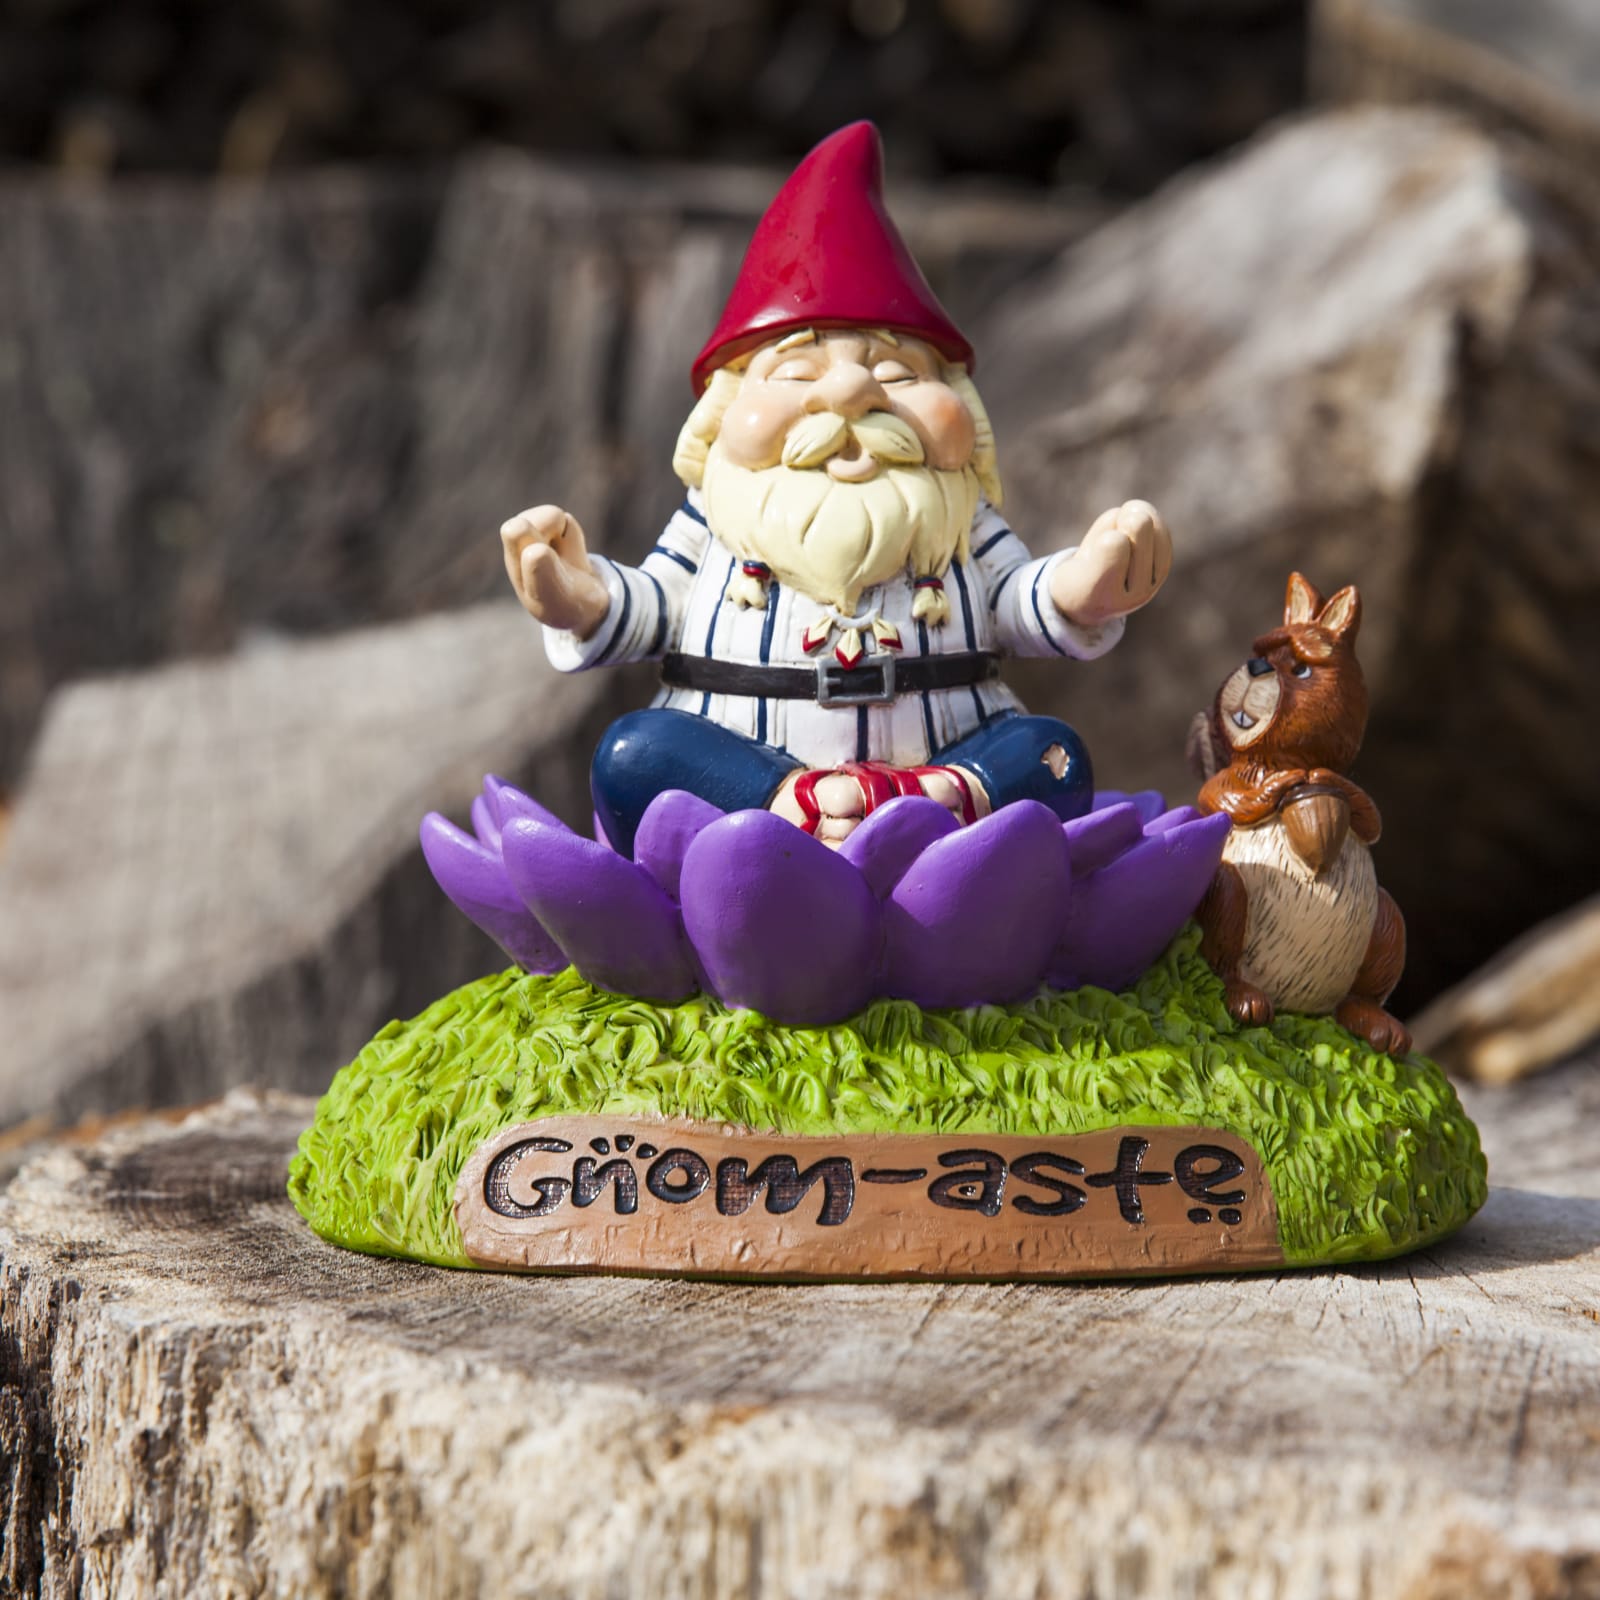 The Gnome-aste Garden Gnome